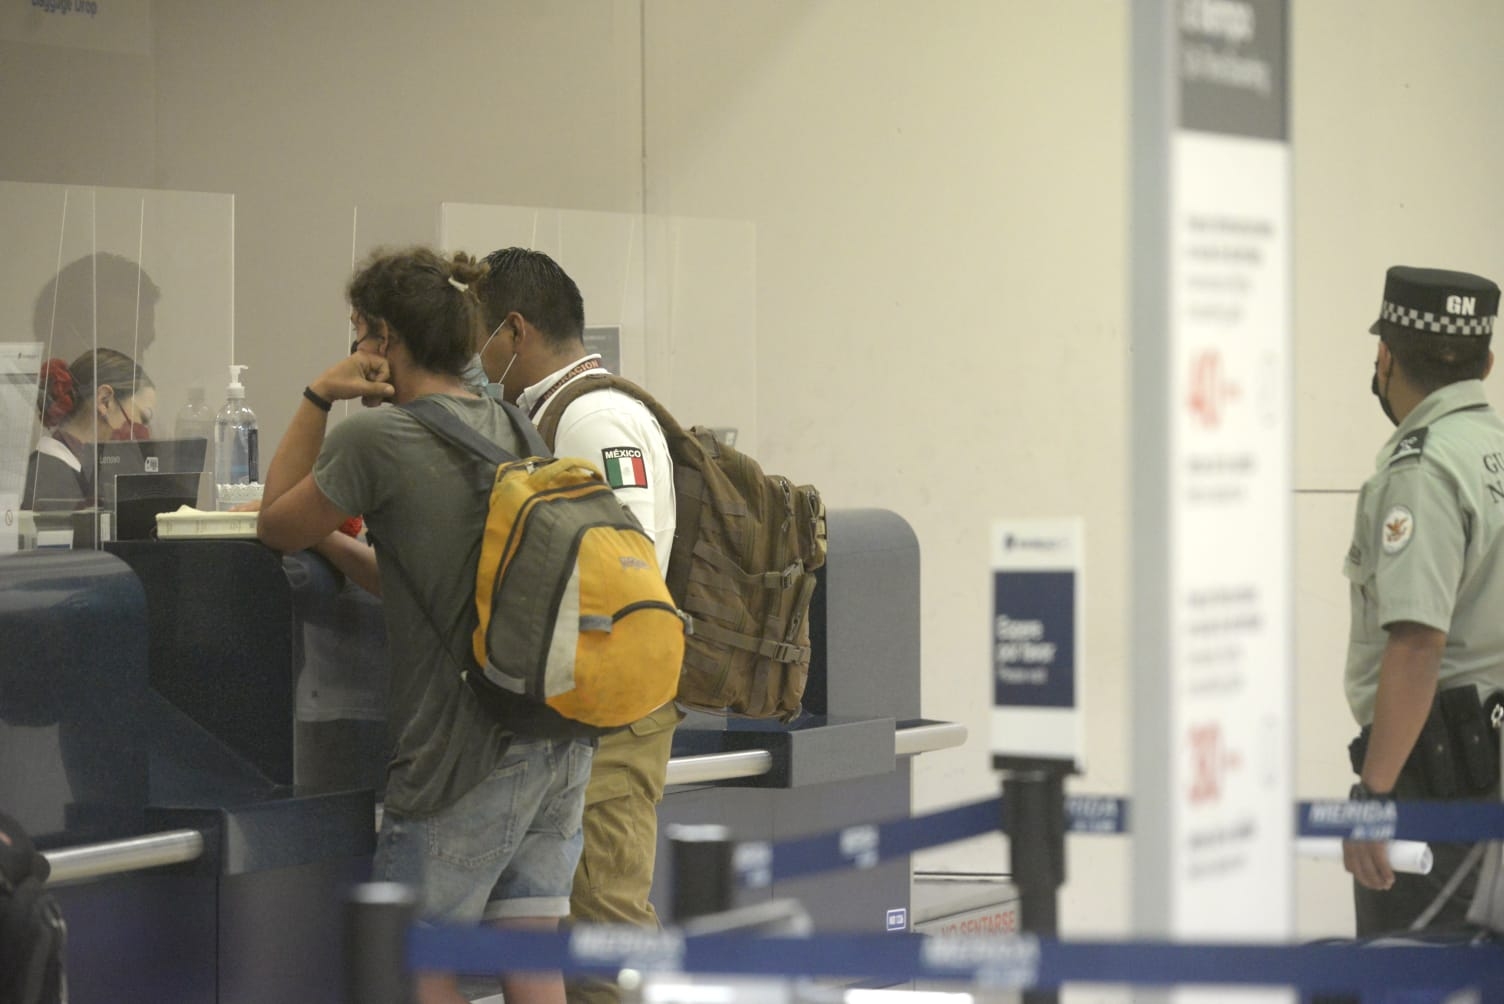 Migración traslada a indocumentado a la CDMX desde el aeropuerto de Mérida